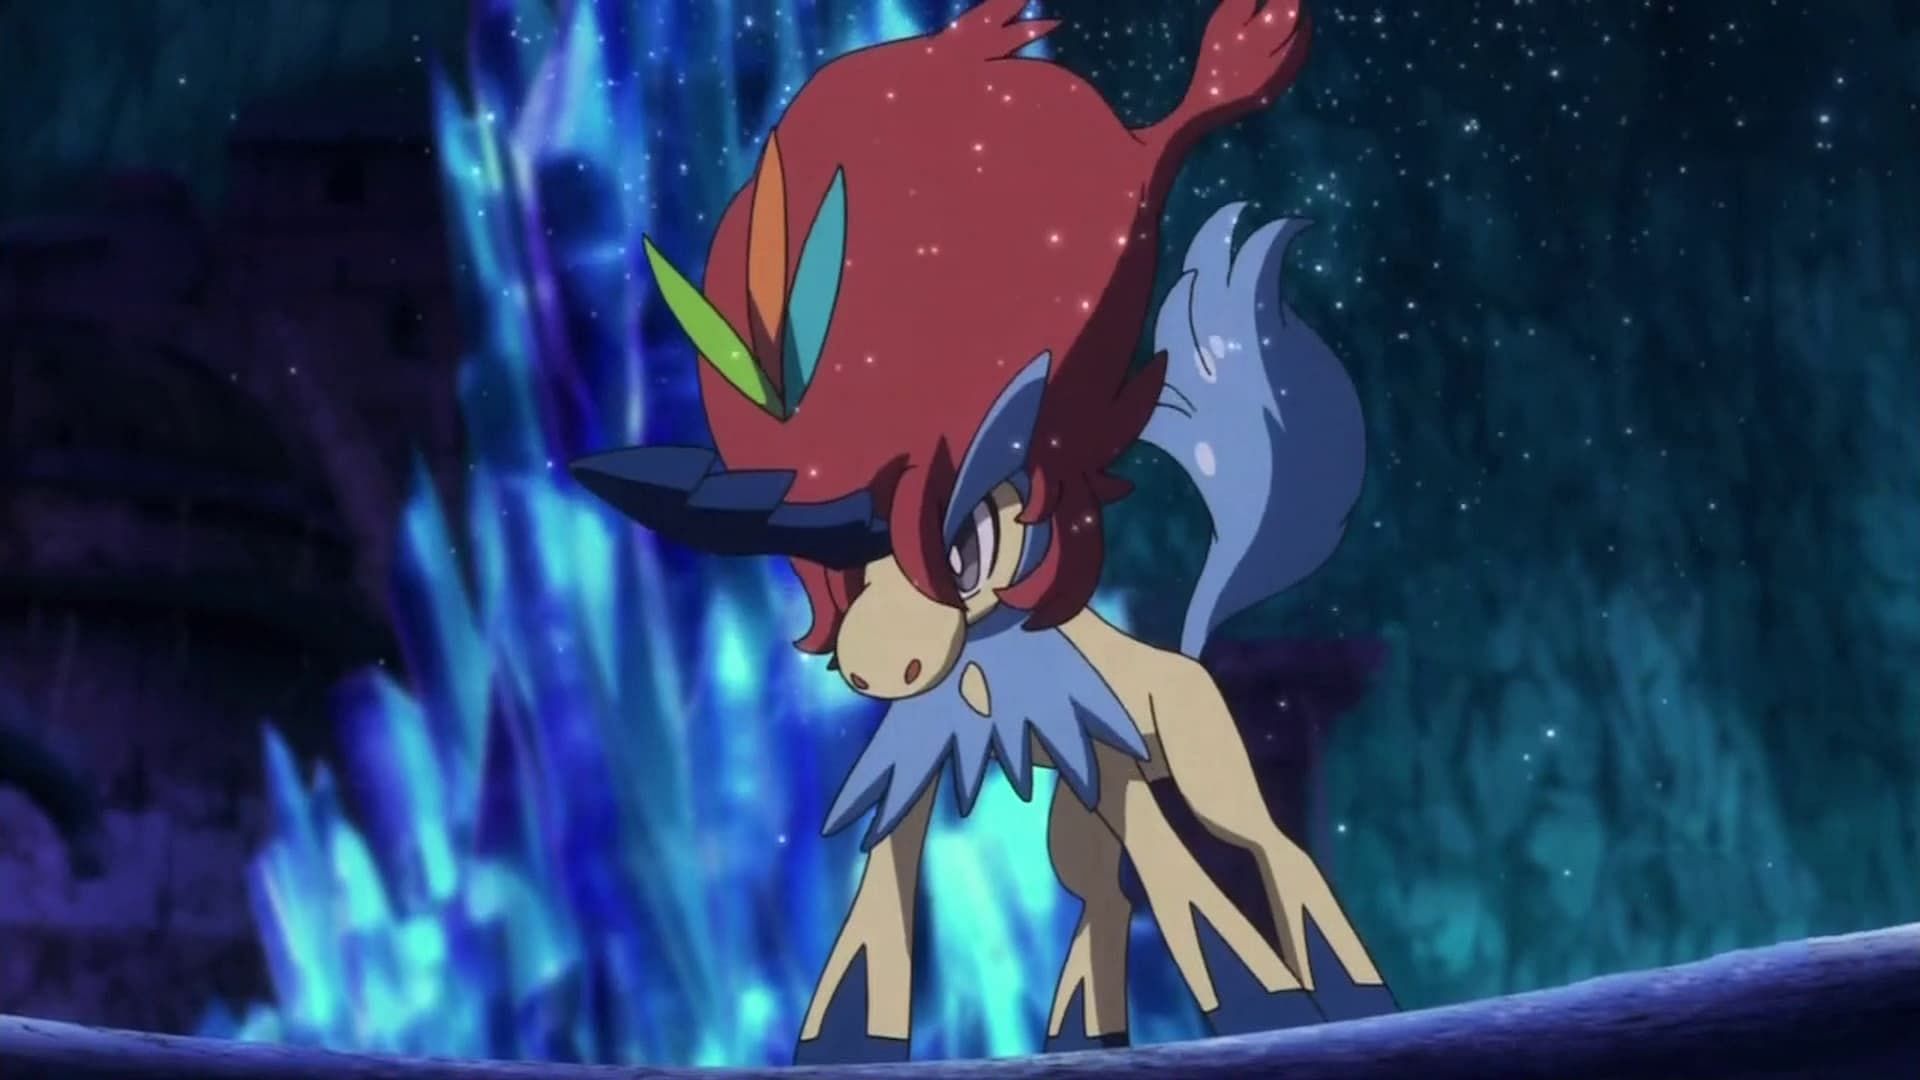 Keldeo in the anime (Image via The Pokemon Company)